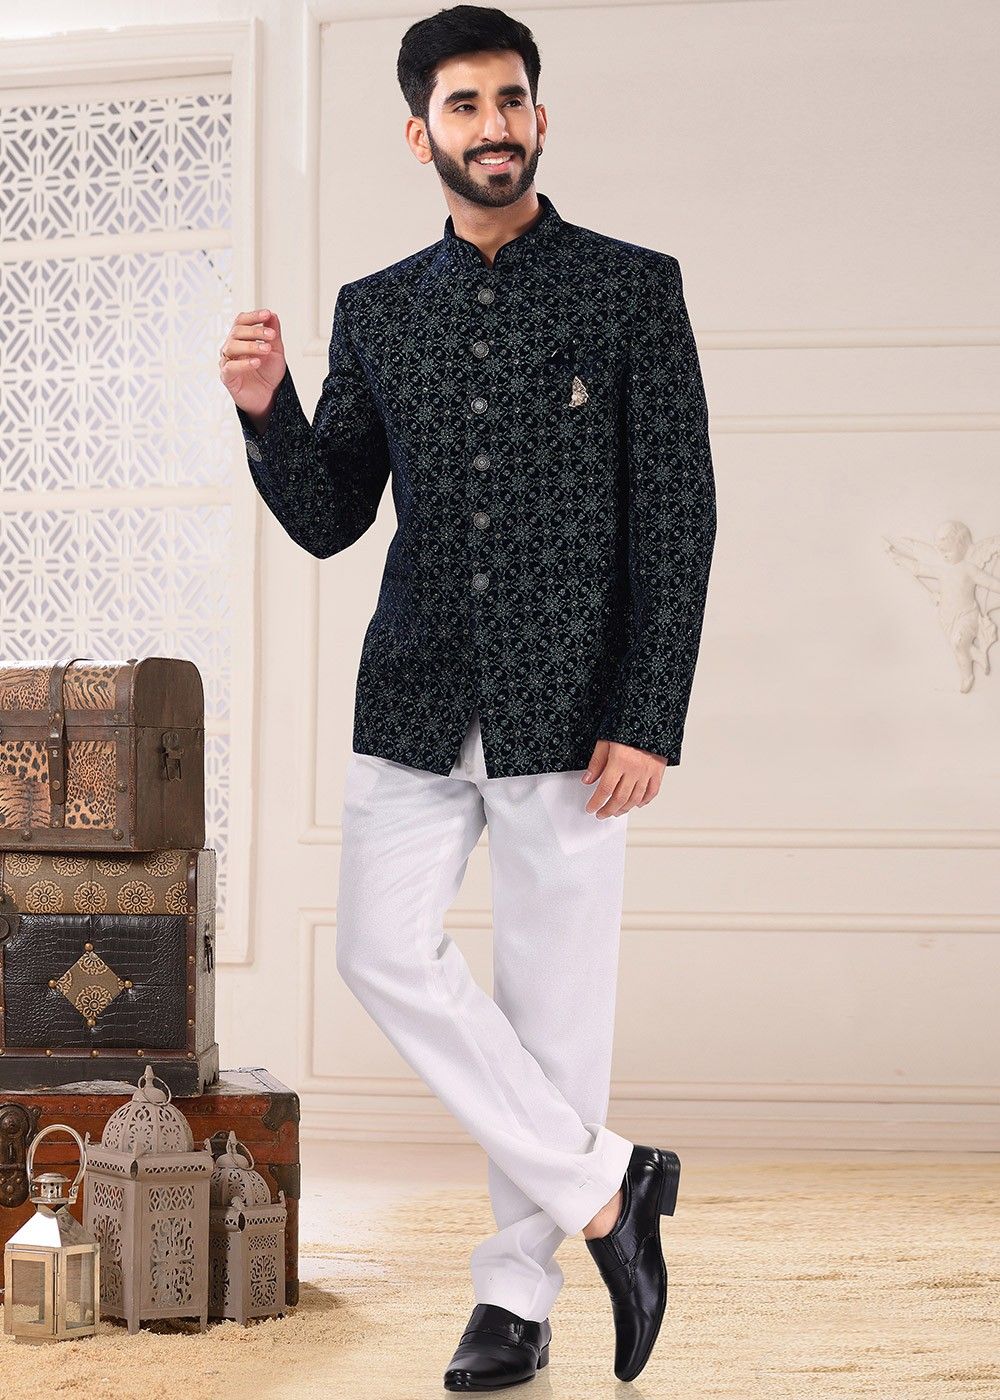 Imported Fabric Mandarin Suit Bandhgala Ethnic Indian Jodhpuri Suit Royal  Blue | eBay